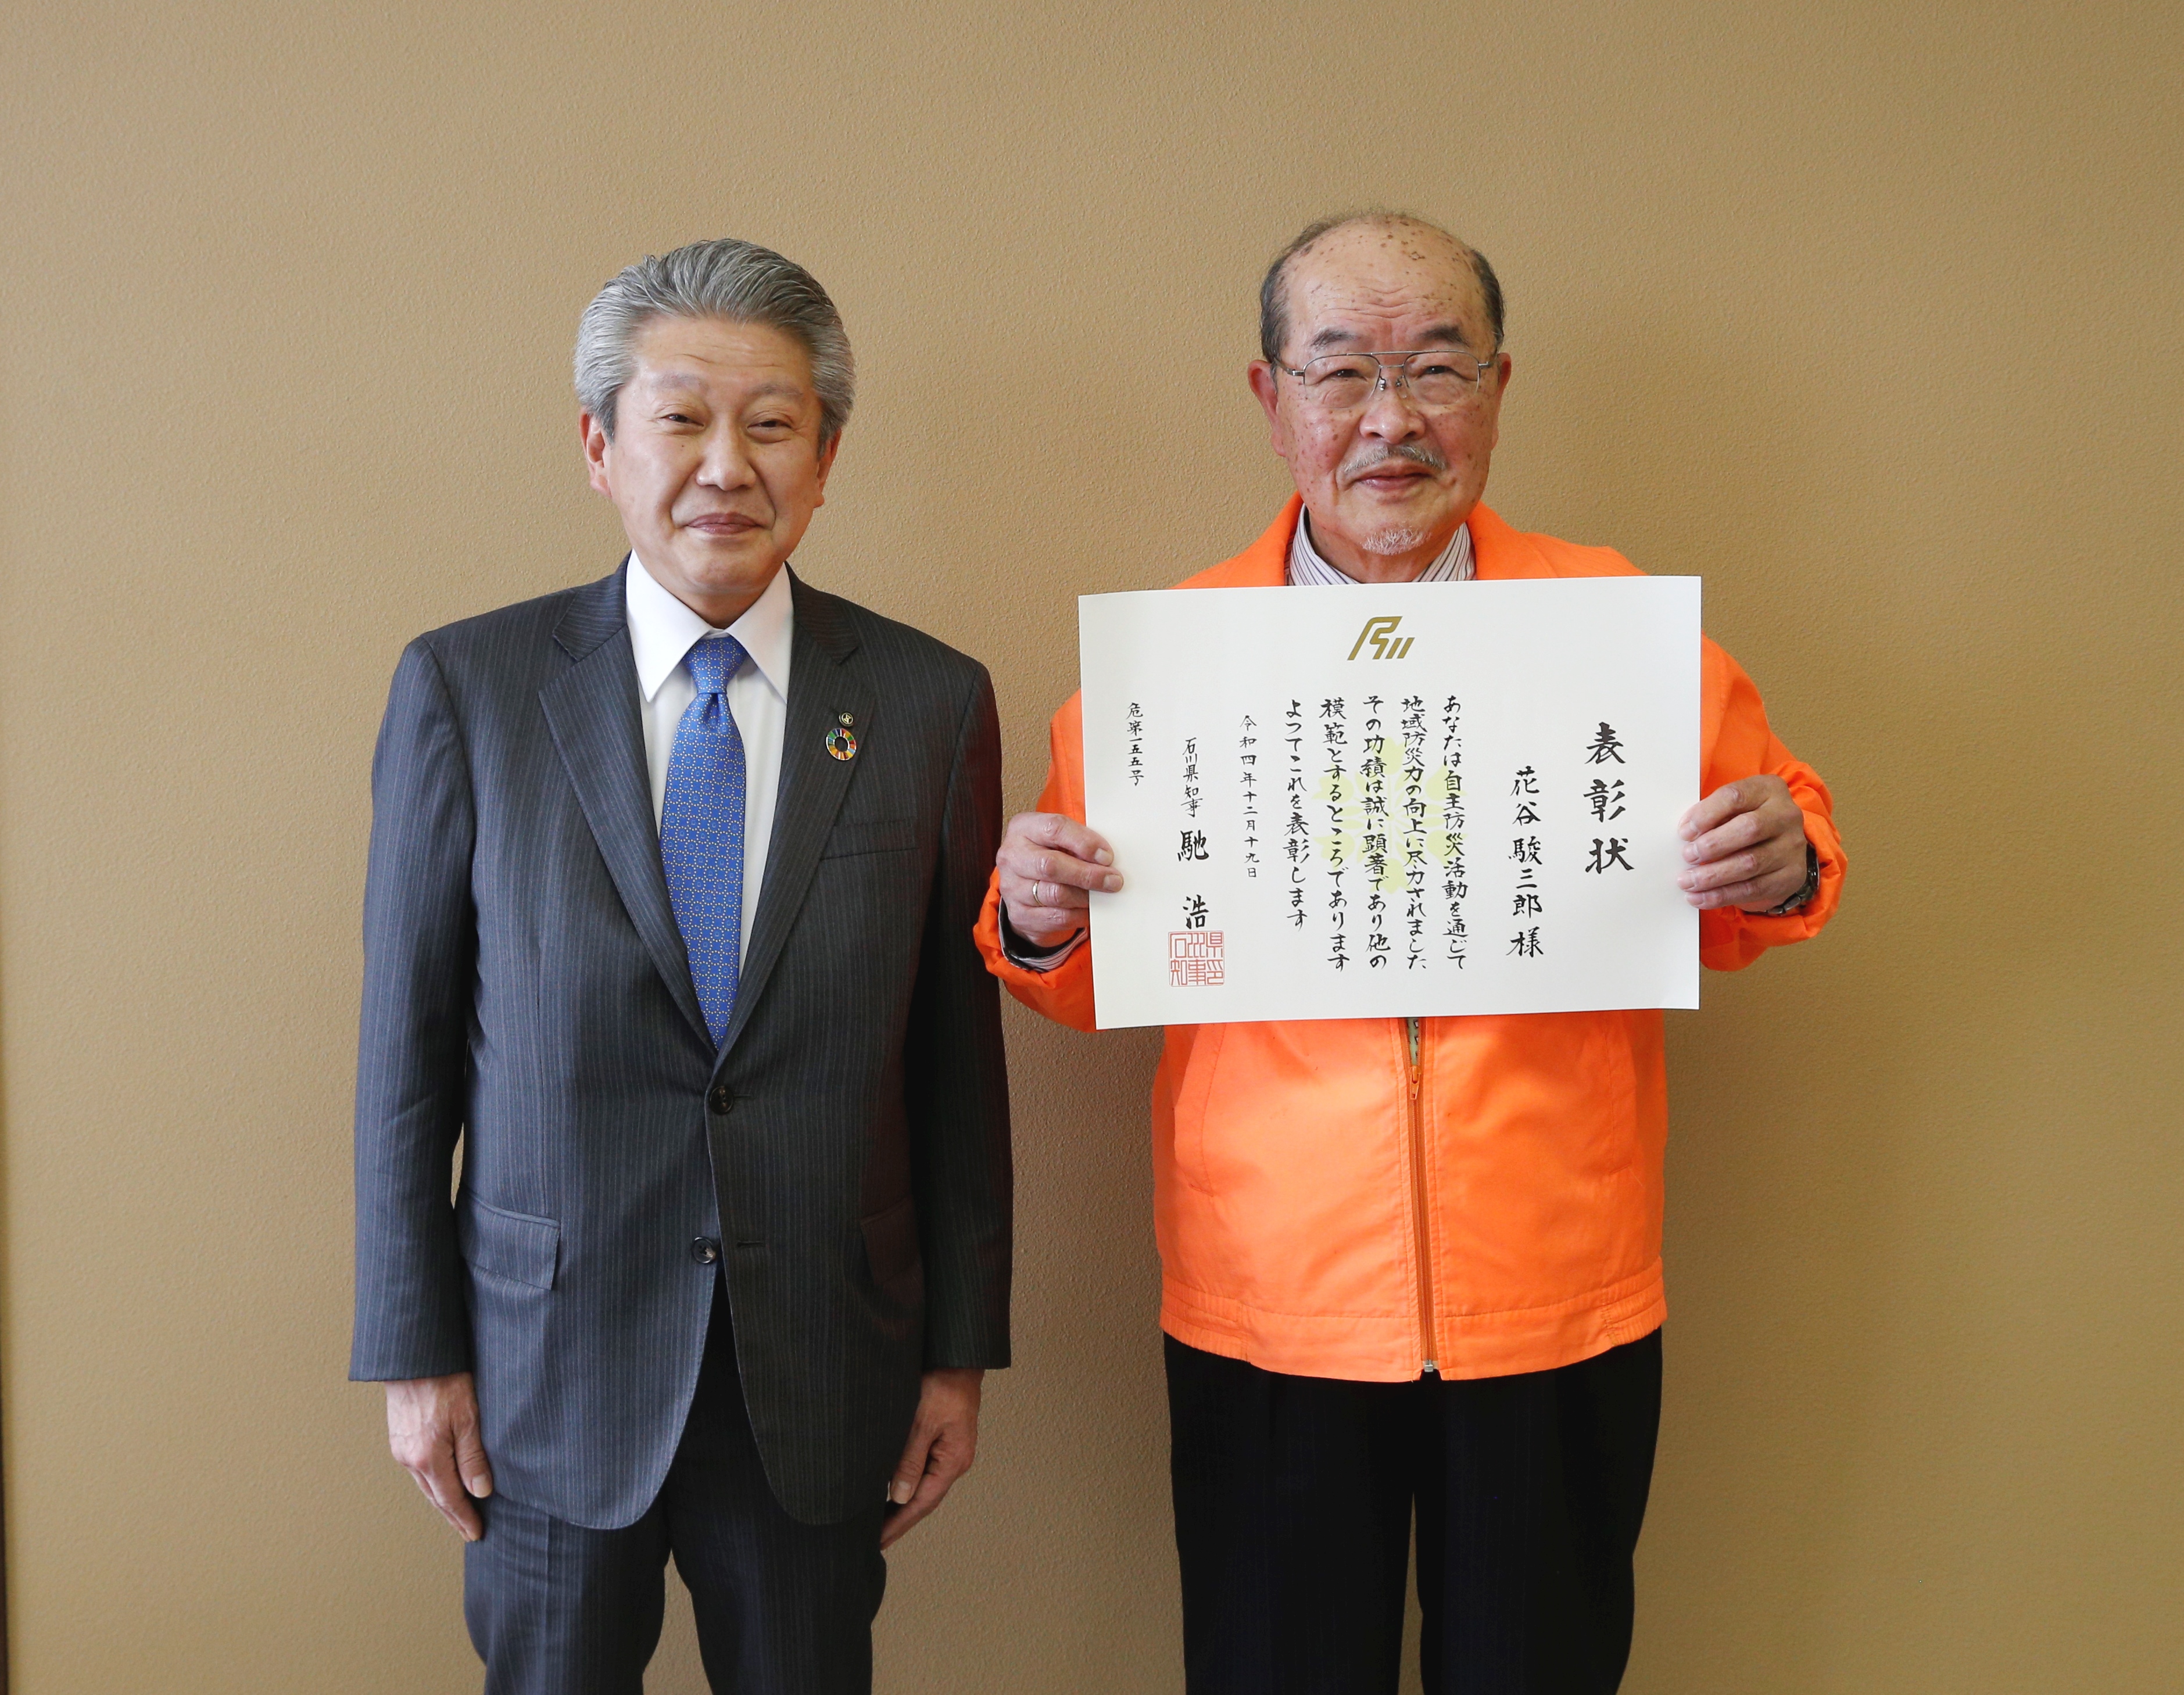 自主防災組織等県知事表彰を受賞した花谷さんの画像